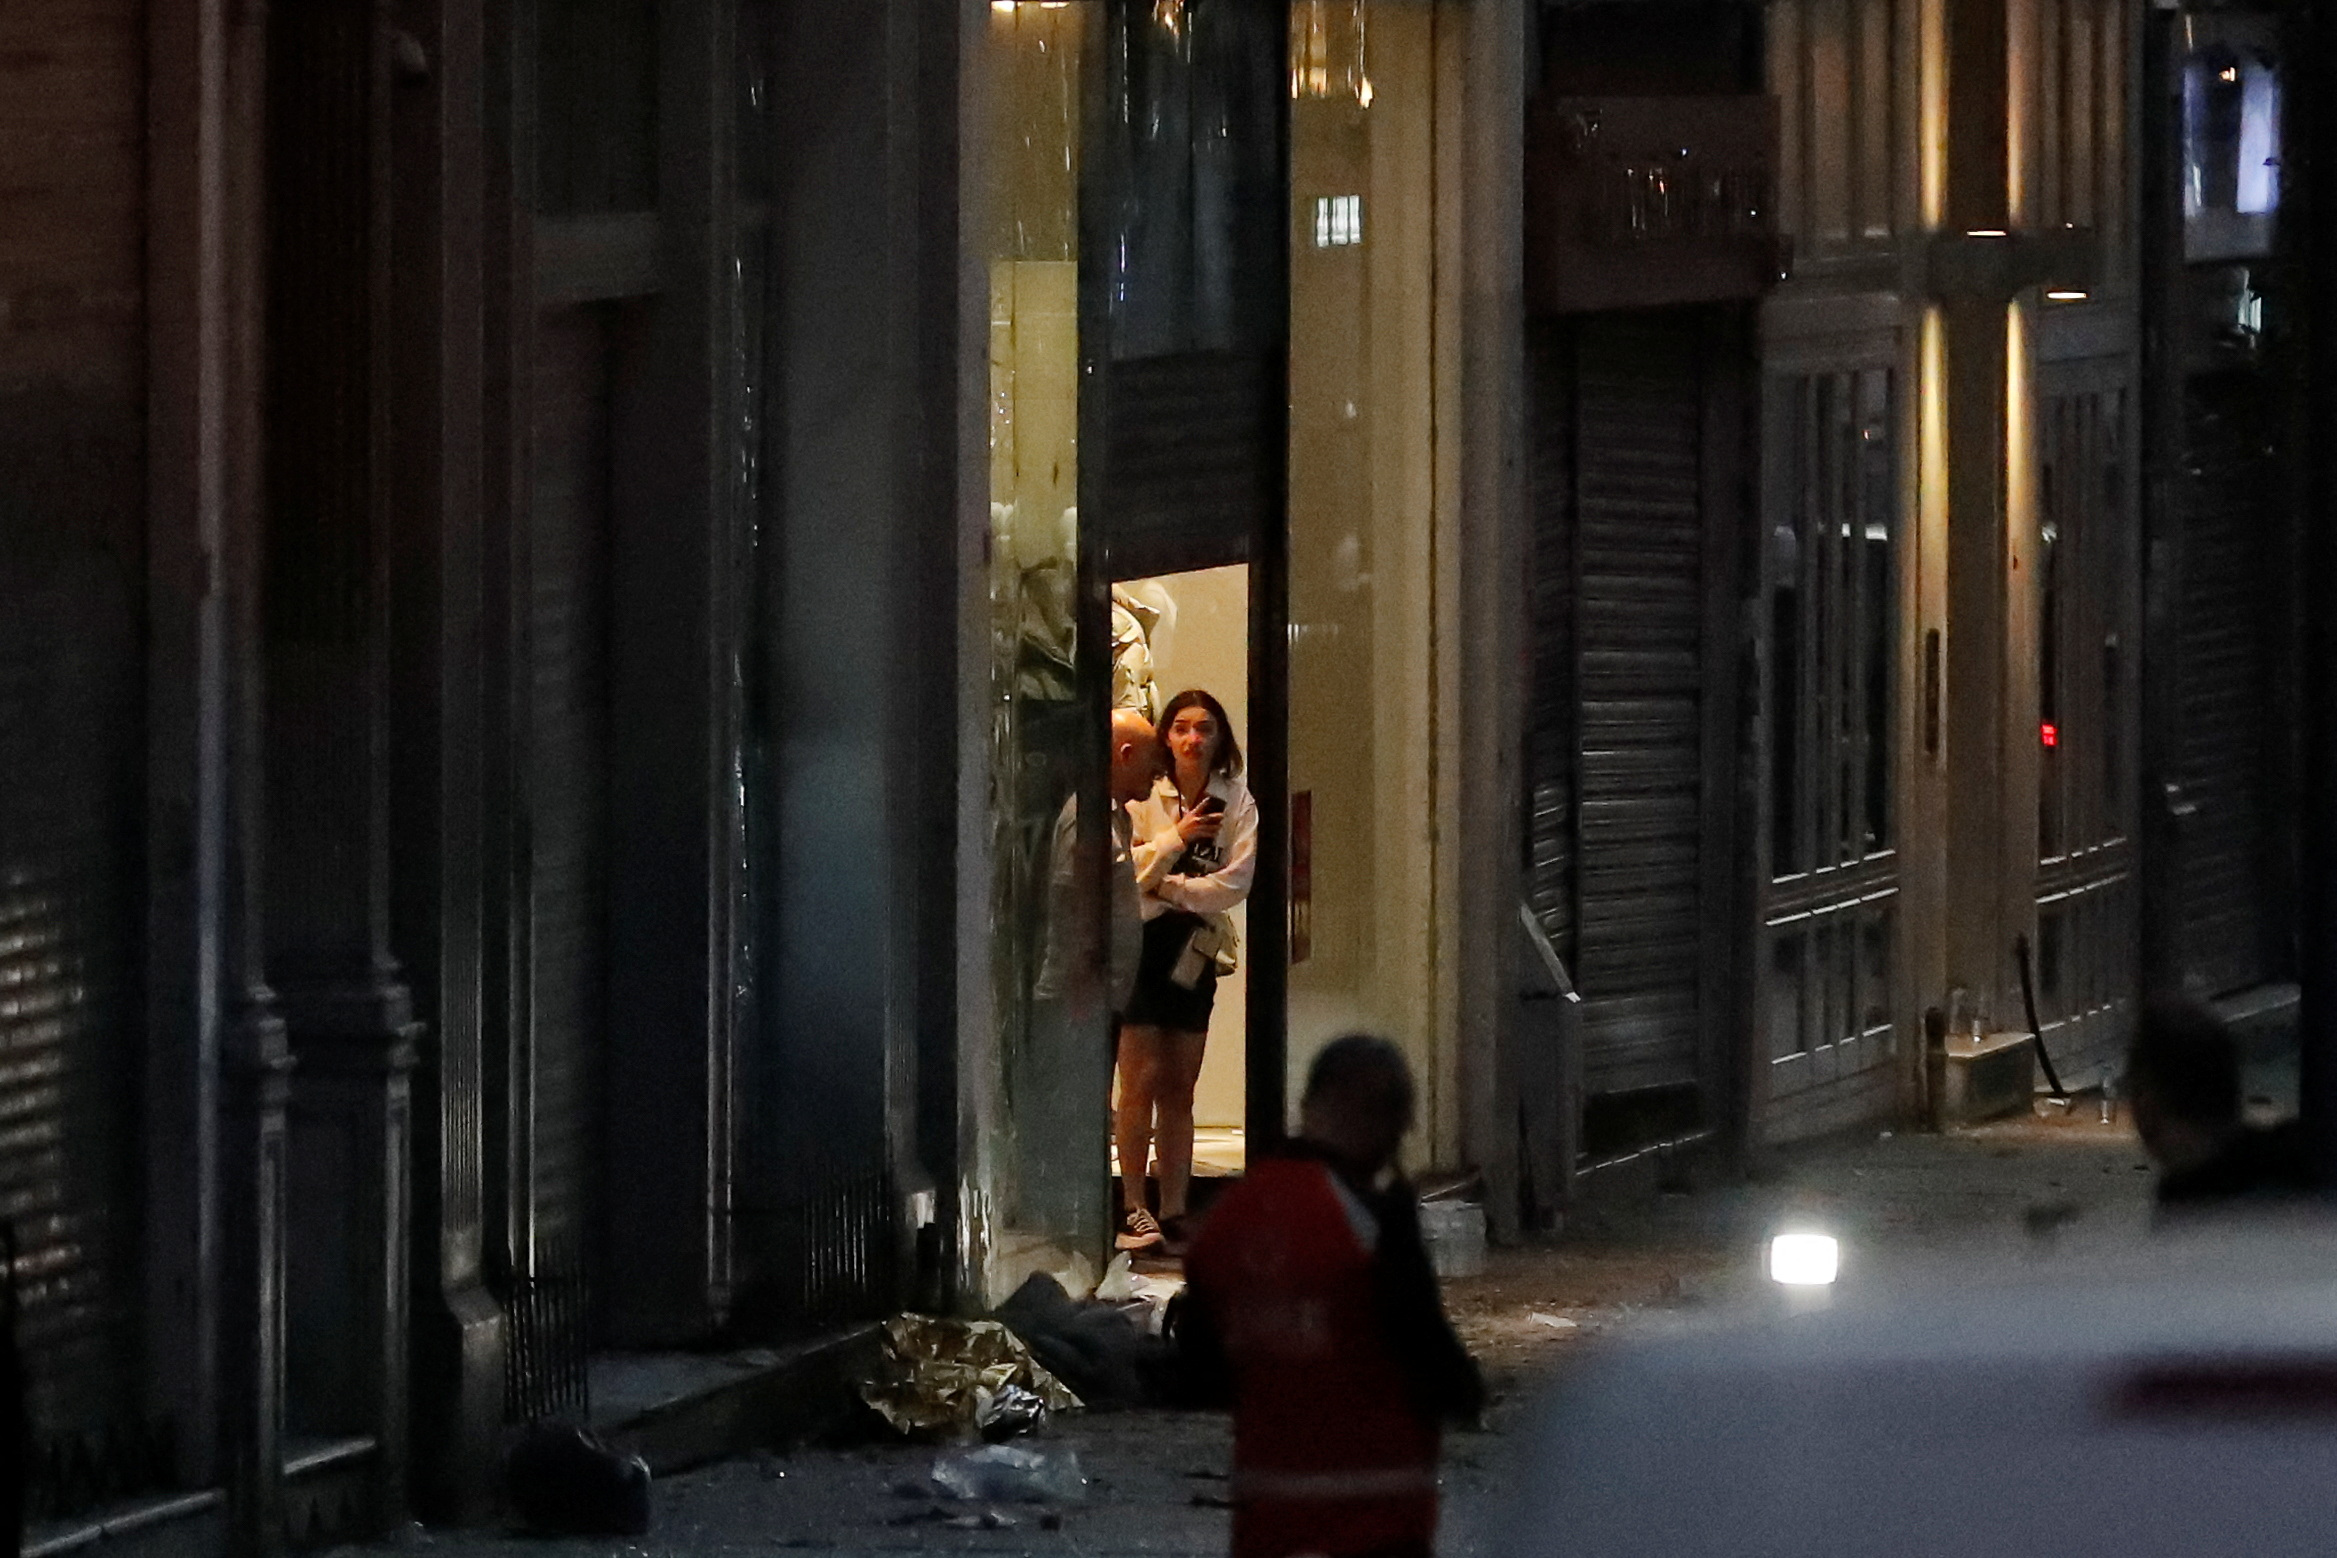 Έκρηξη στην Κωνσταντινούπολη: Ο φόβος επέστρεψε στην τουρκική μητρόπολη - Το προφίλ της υπόπτου που αναζητούν οι αρχές